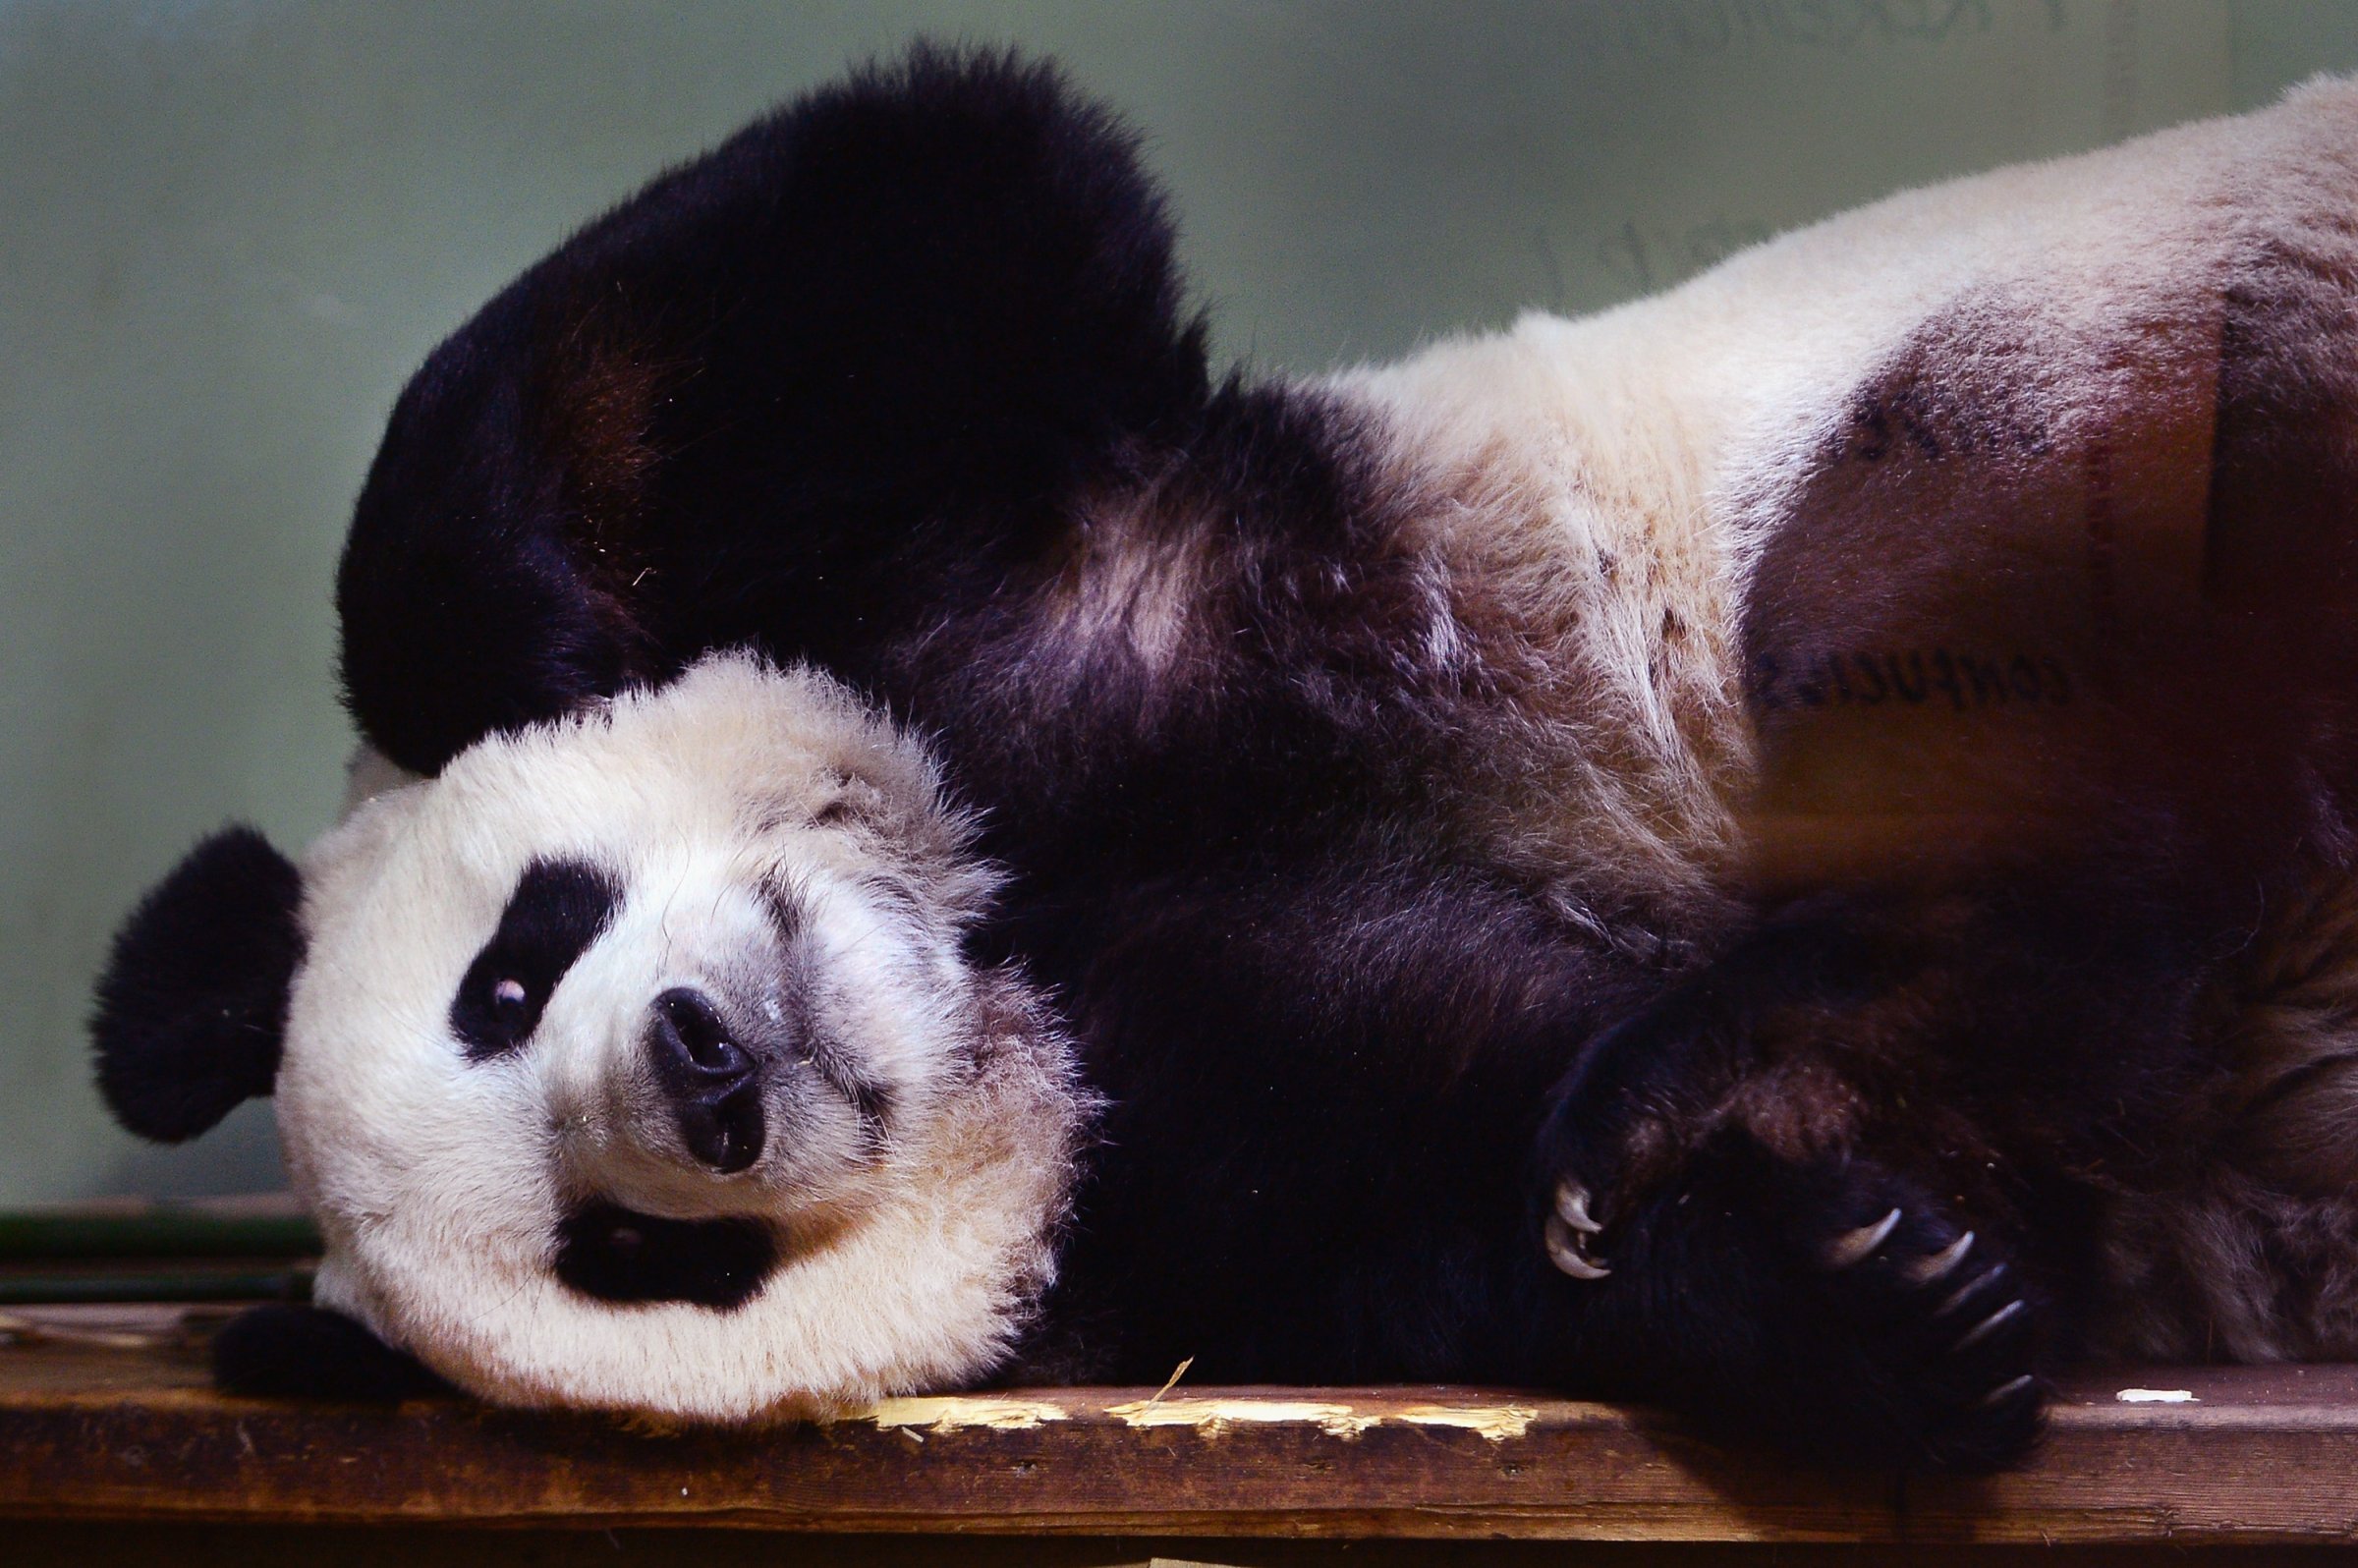 Giant Pandas Tian Tian And Yang Guang Ahead Of The 2014 Breeding Season